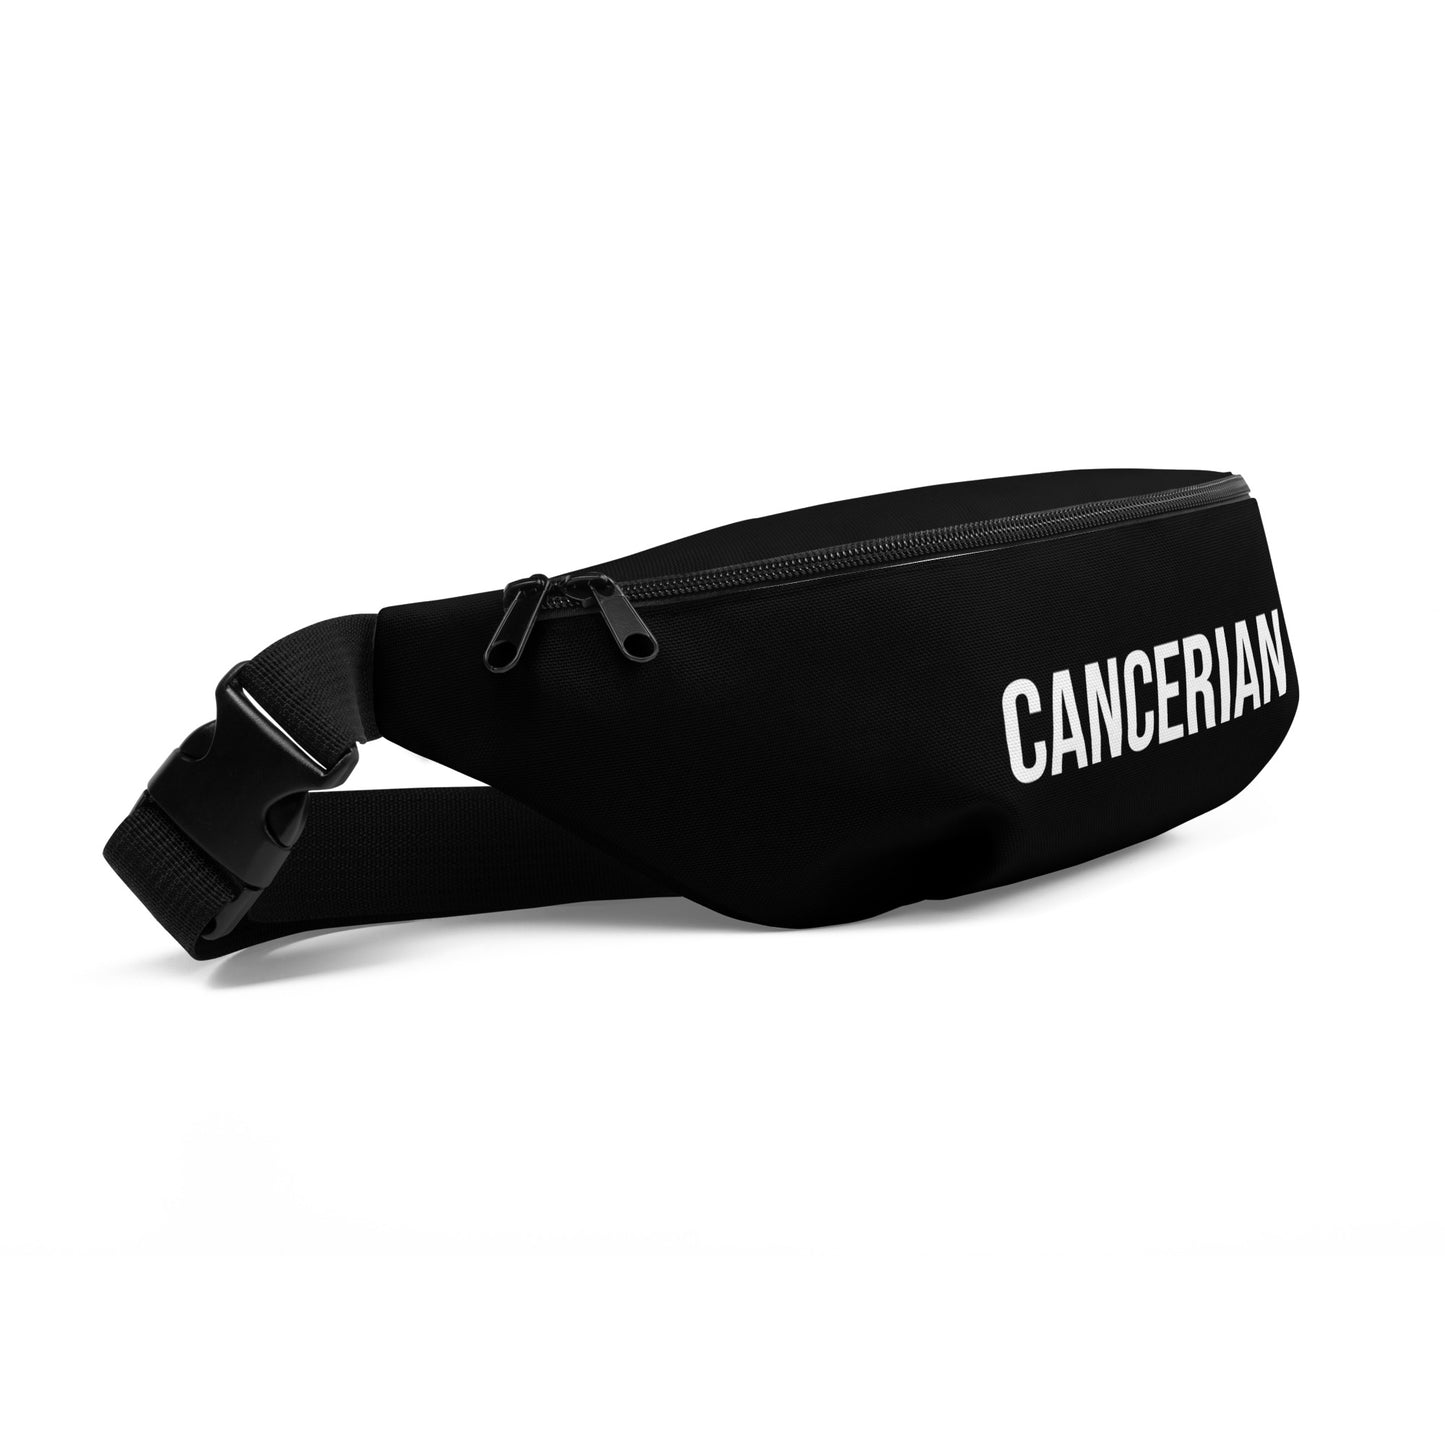 Cancerian Belt Bag (Black)